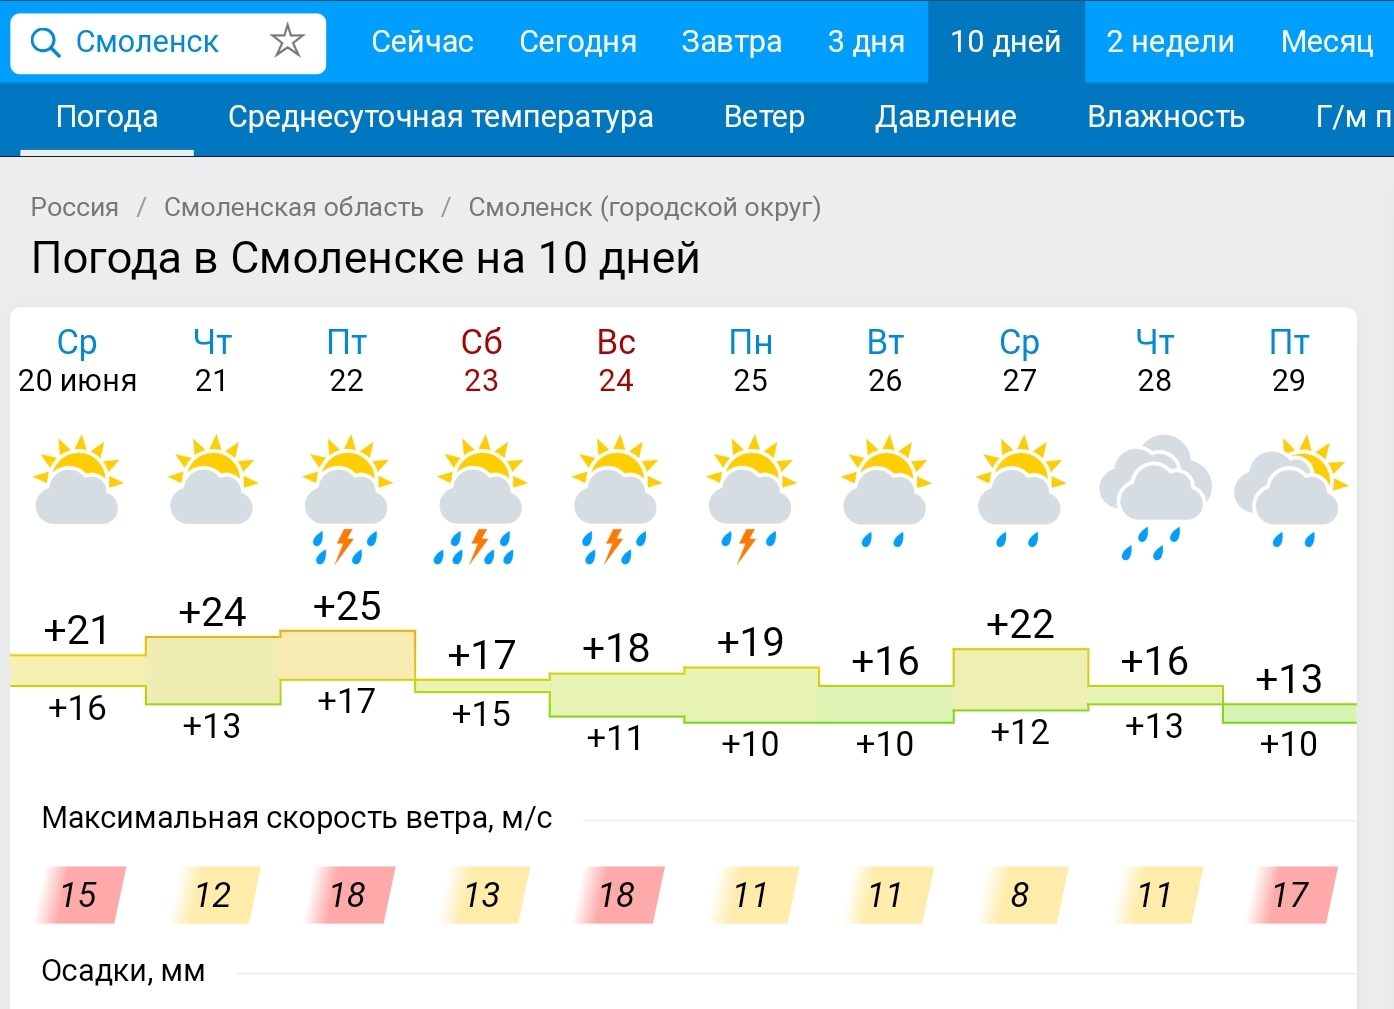 Погода завтра в 12 часов. Погода в Смоленске. Погода в Смоленске на 2 недели. Погода в Смоленске сегодня. Погода на 10 дней.